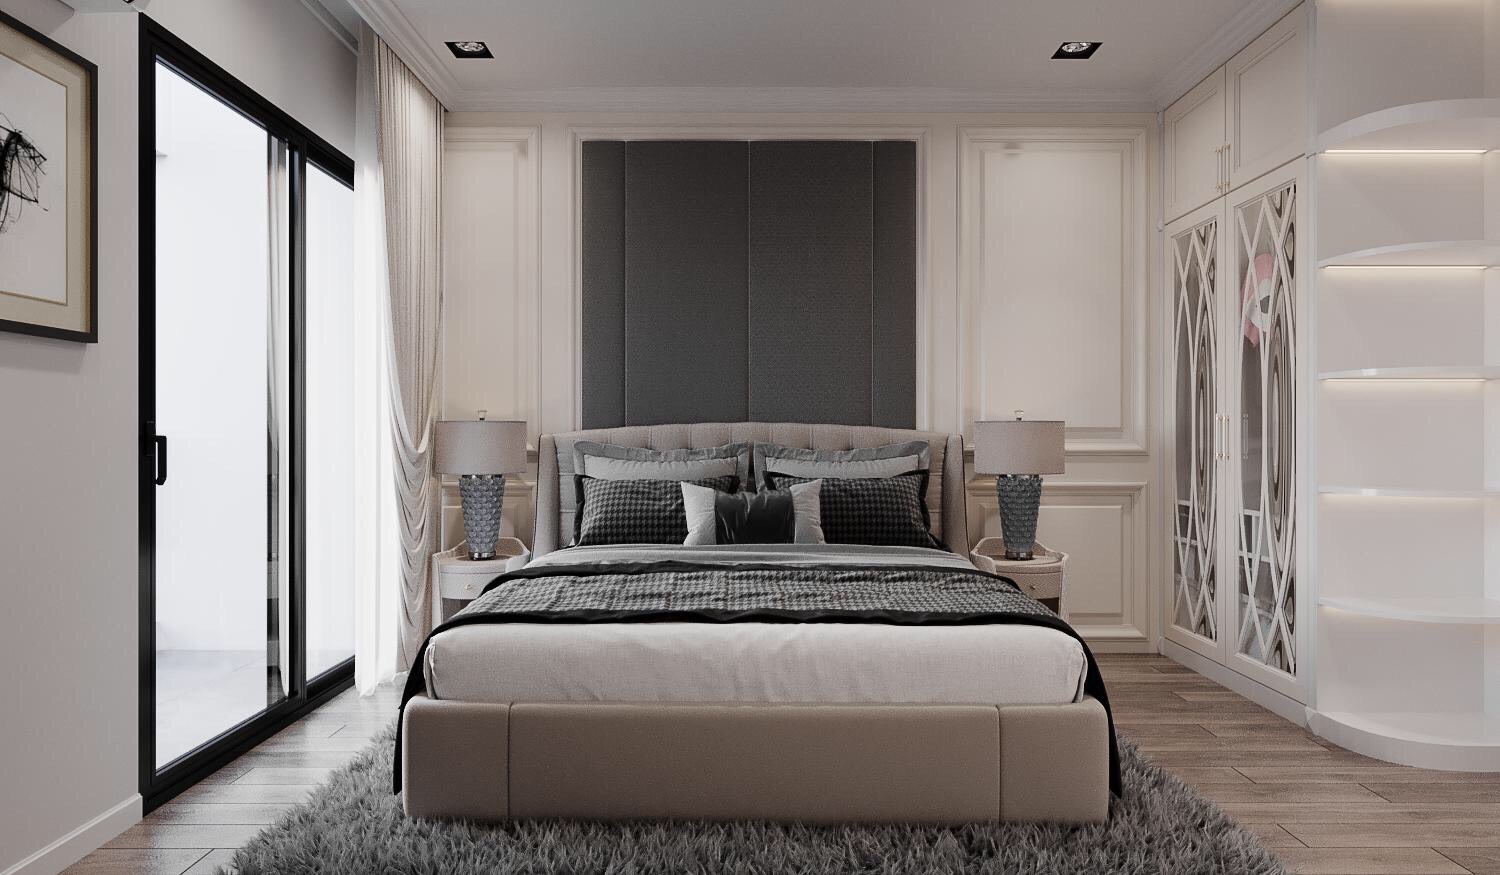 Thiết kế phòng ngủ master là sự hòa quyện ăn ý giữa chất Tân cổ điển sang trọng và nét hiện đại trẻ trung, thanh lịch.